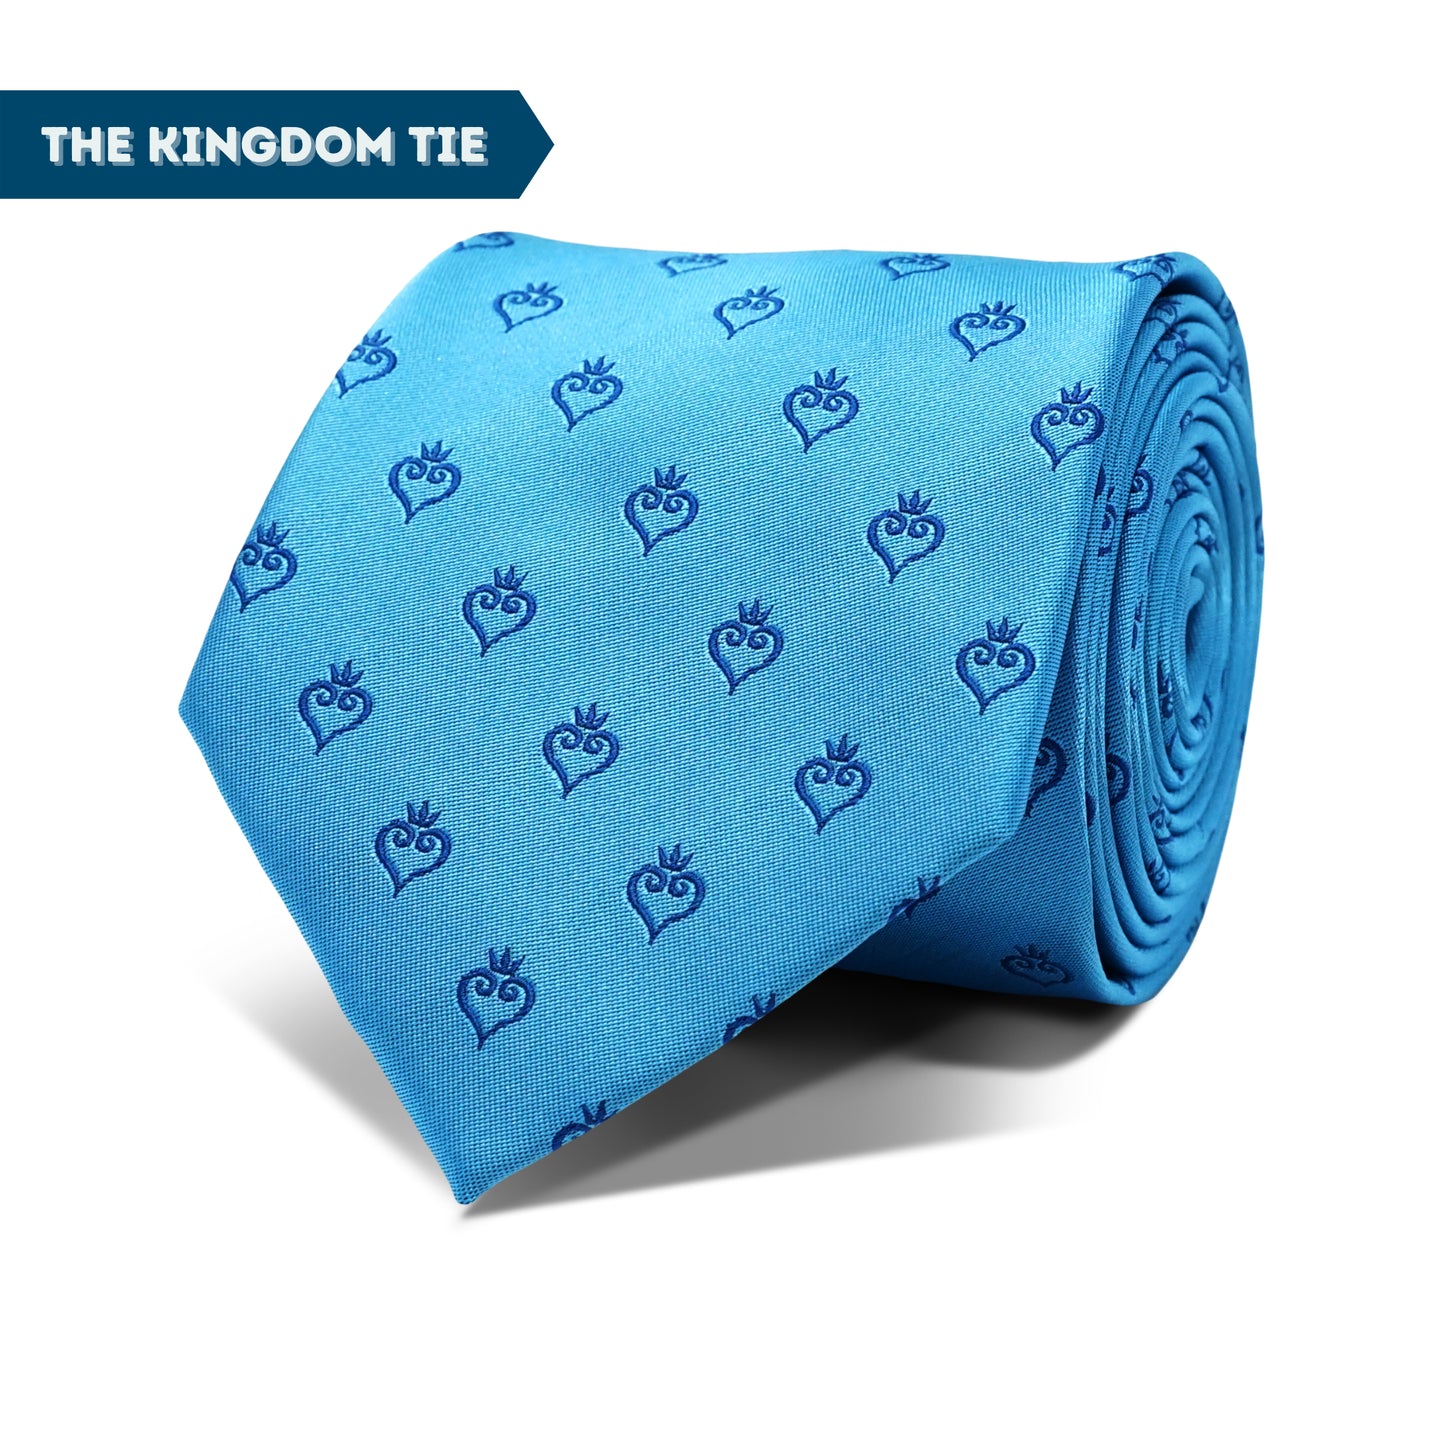 Kingdom Tie + Kingdom Key